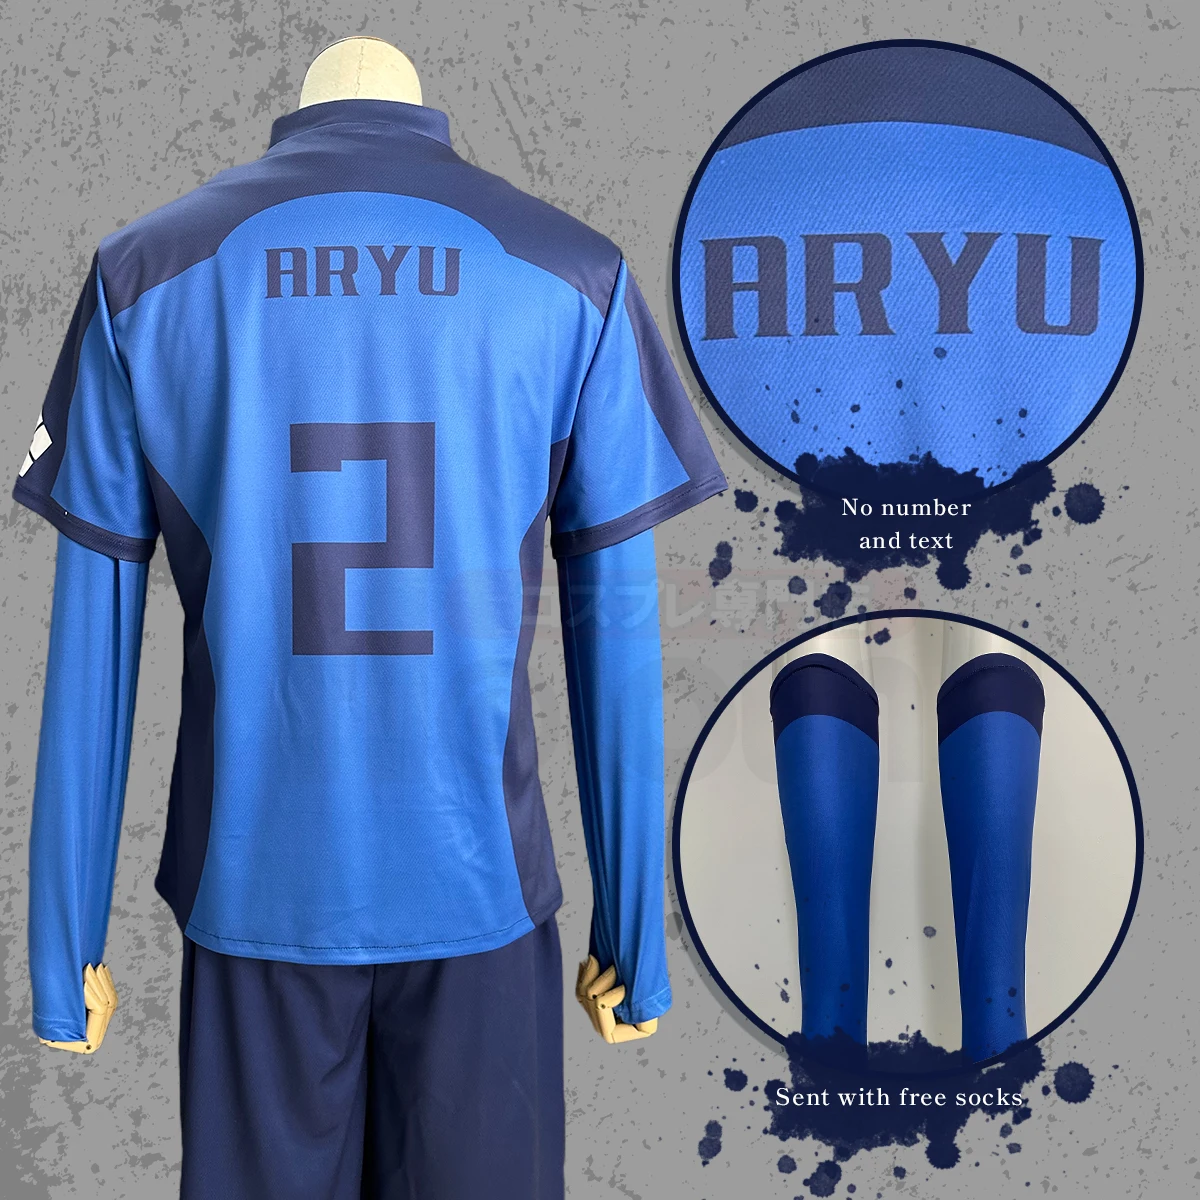 HOLOUN disfraz de Cosplay de Anime Aryu No.2 con cerradura azul, peluca, uniforme de equipo de fútbol, logotipo bordado, ropa deportiva diaria, red rosa